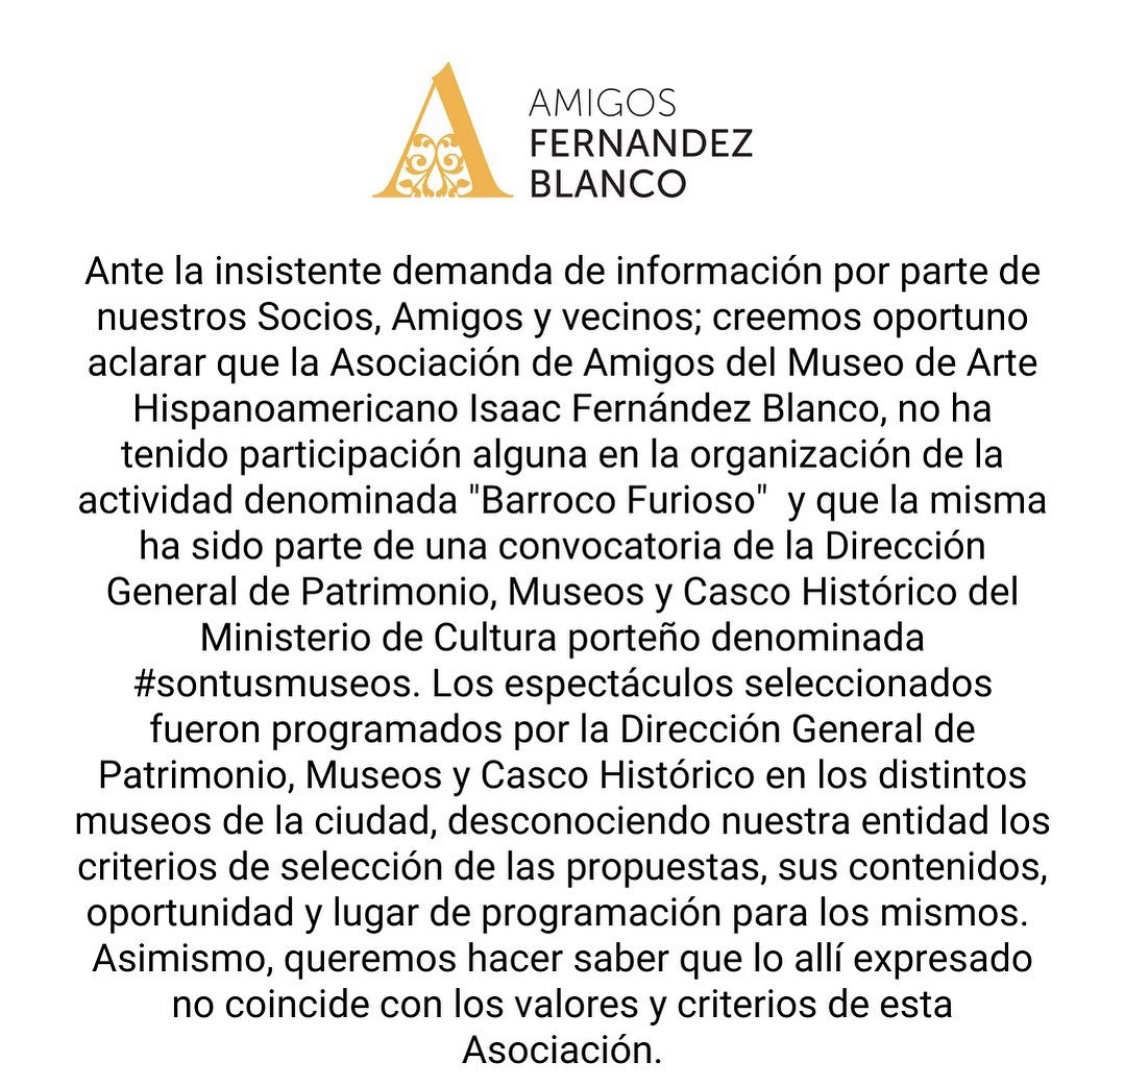 El mensaje de la Asociación Amigos del Museo Fernández Blanco